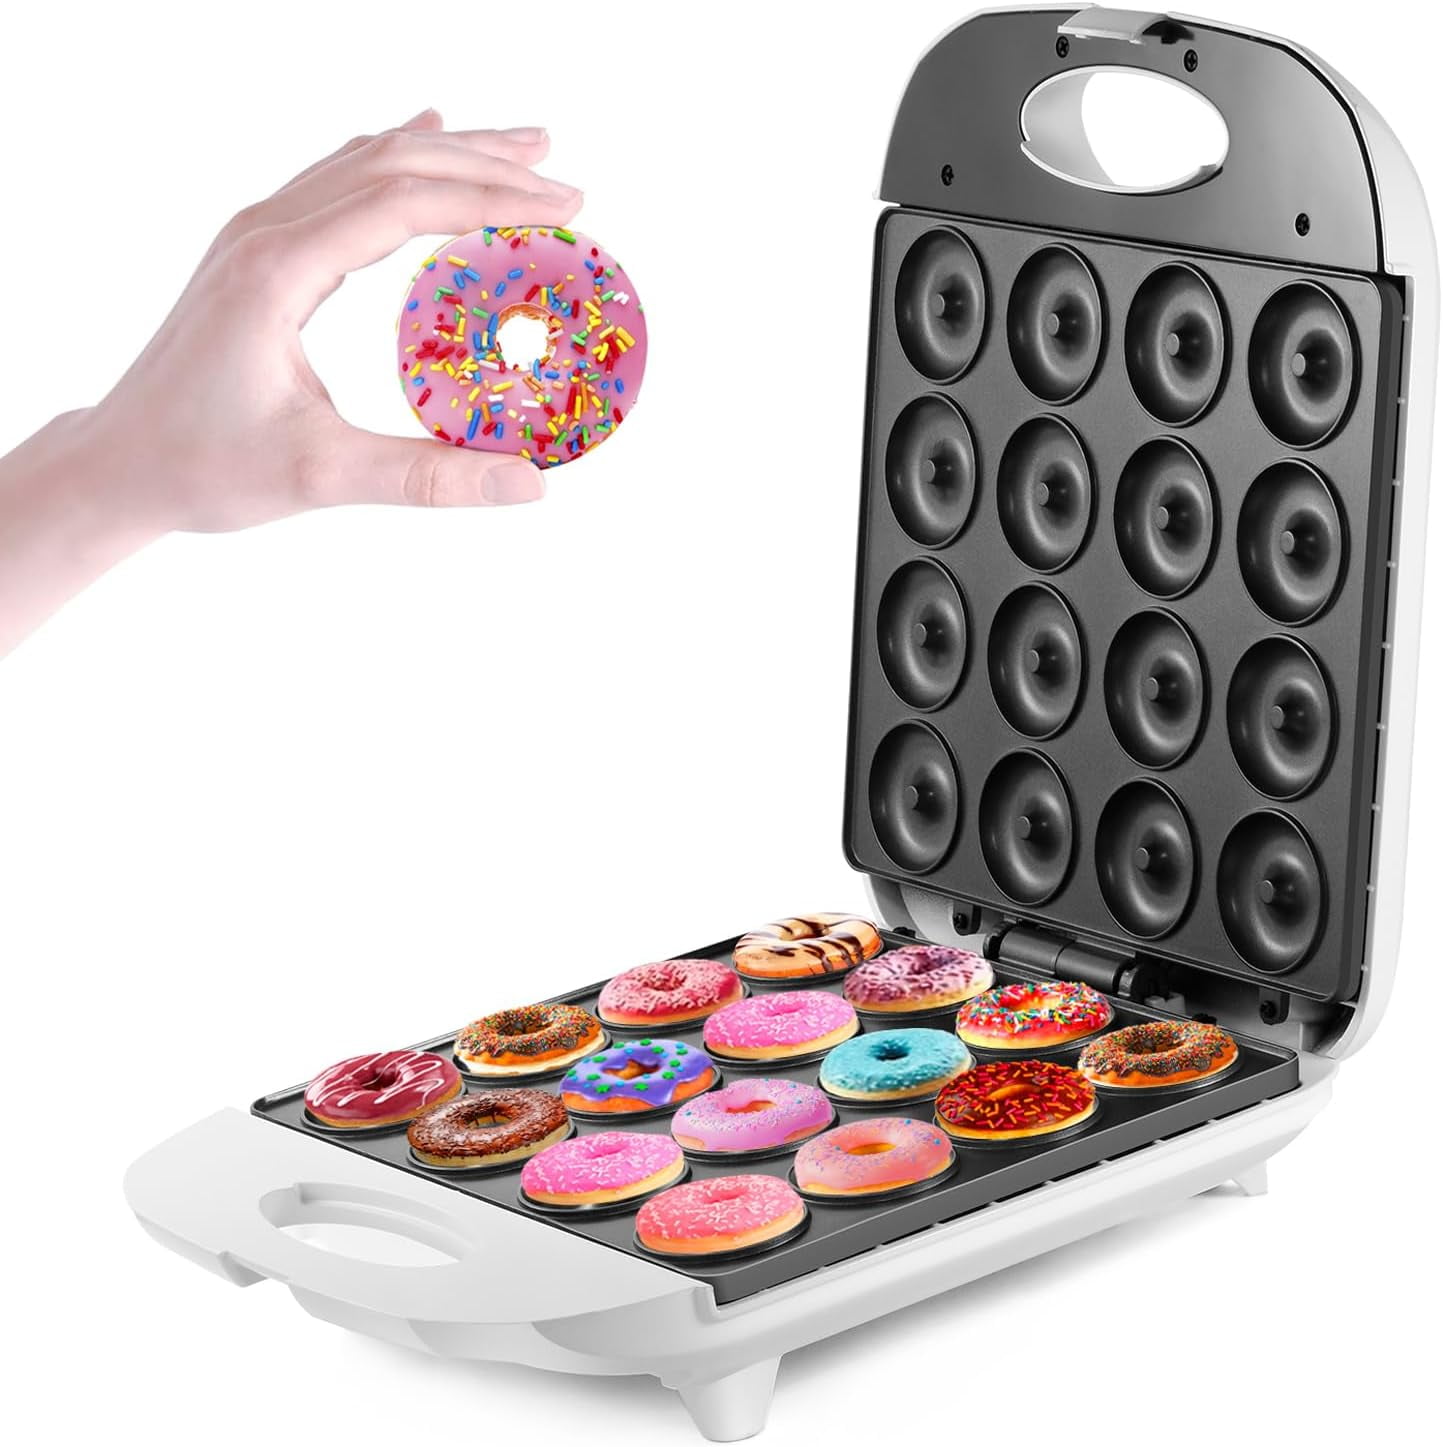  DASH Mini Donut Maker Machine for Kid-Friendly